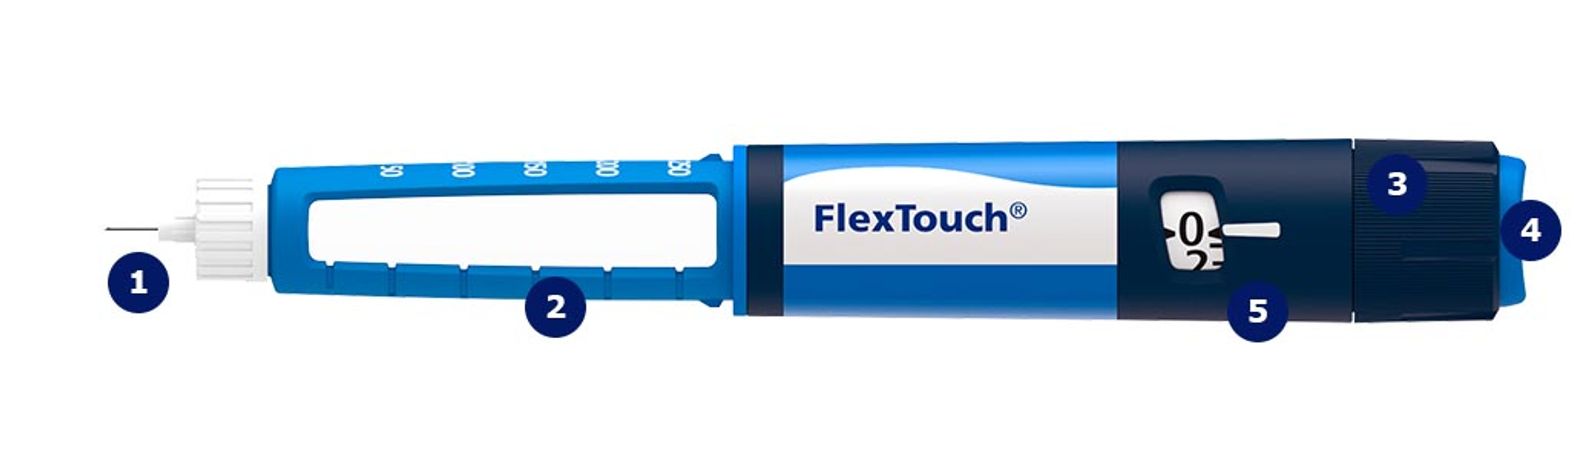 FlexTouch - Insulin Pen